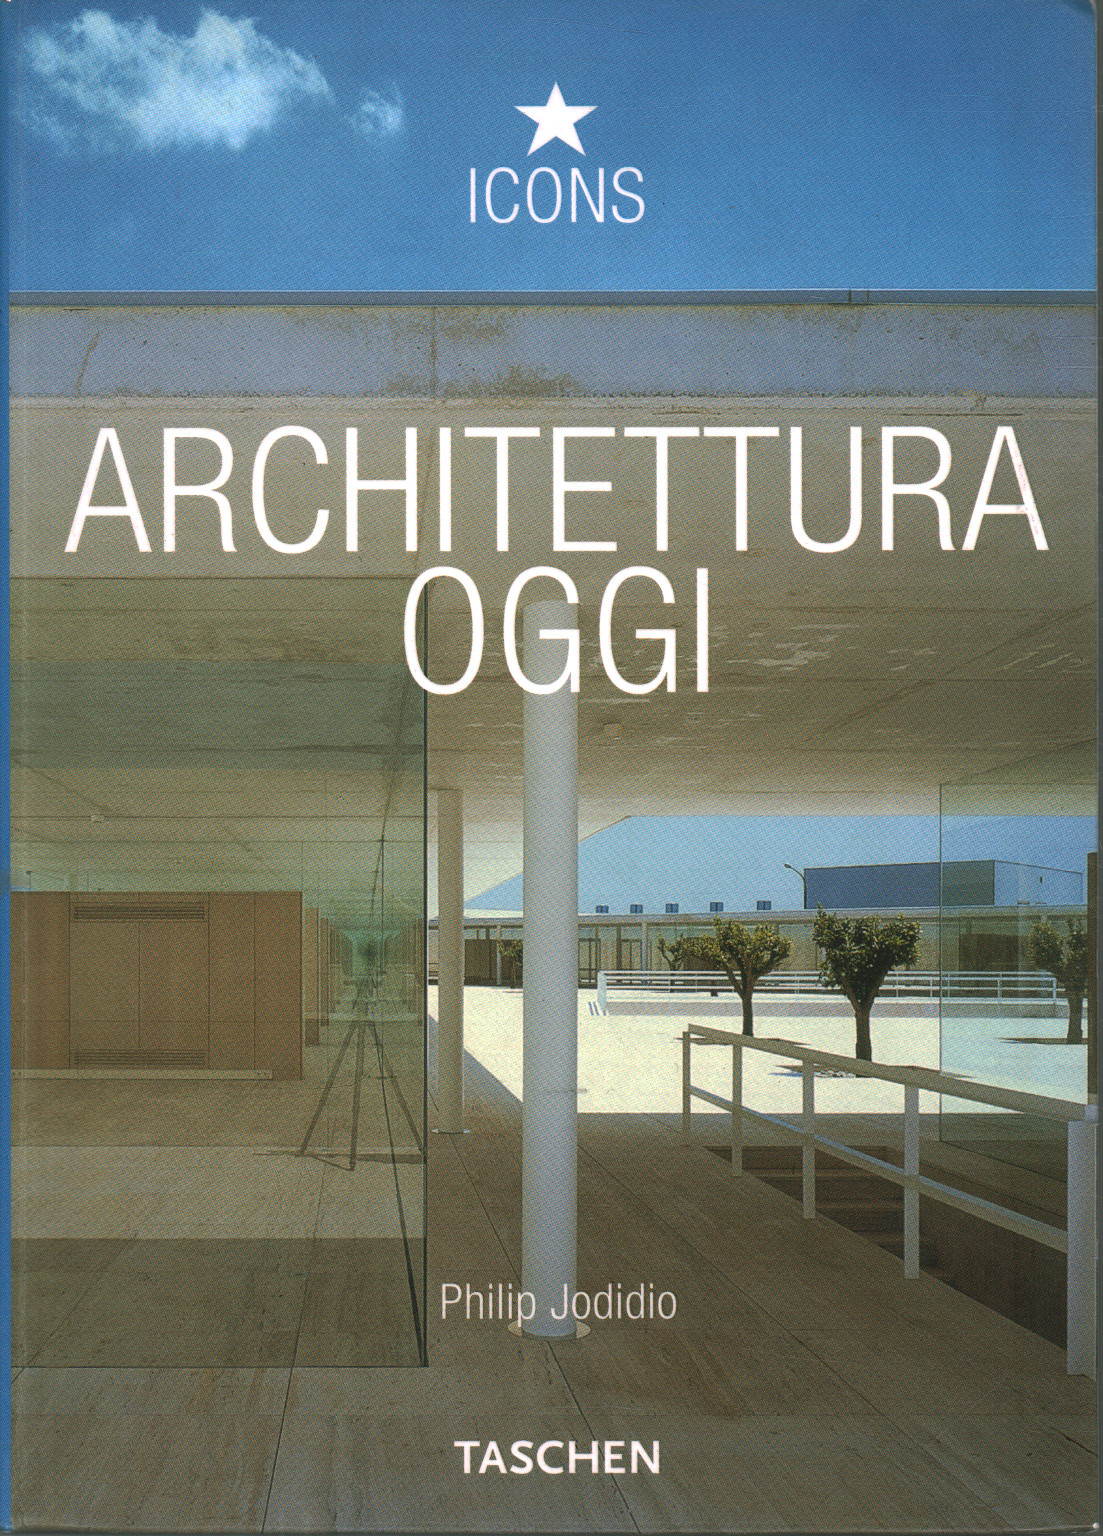 Architecture today, Philip Jodidio